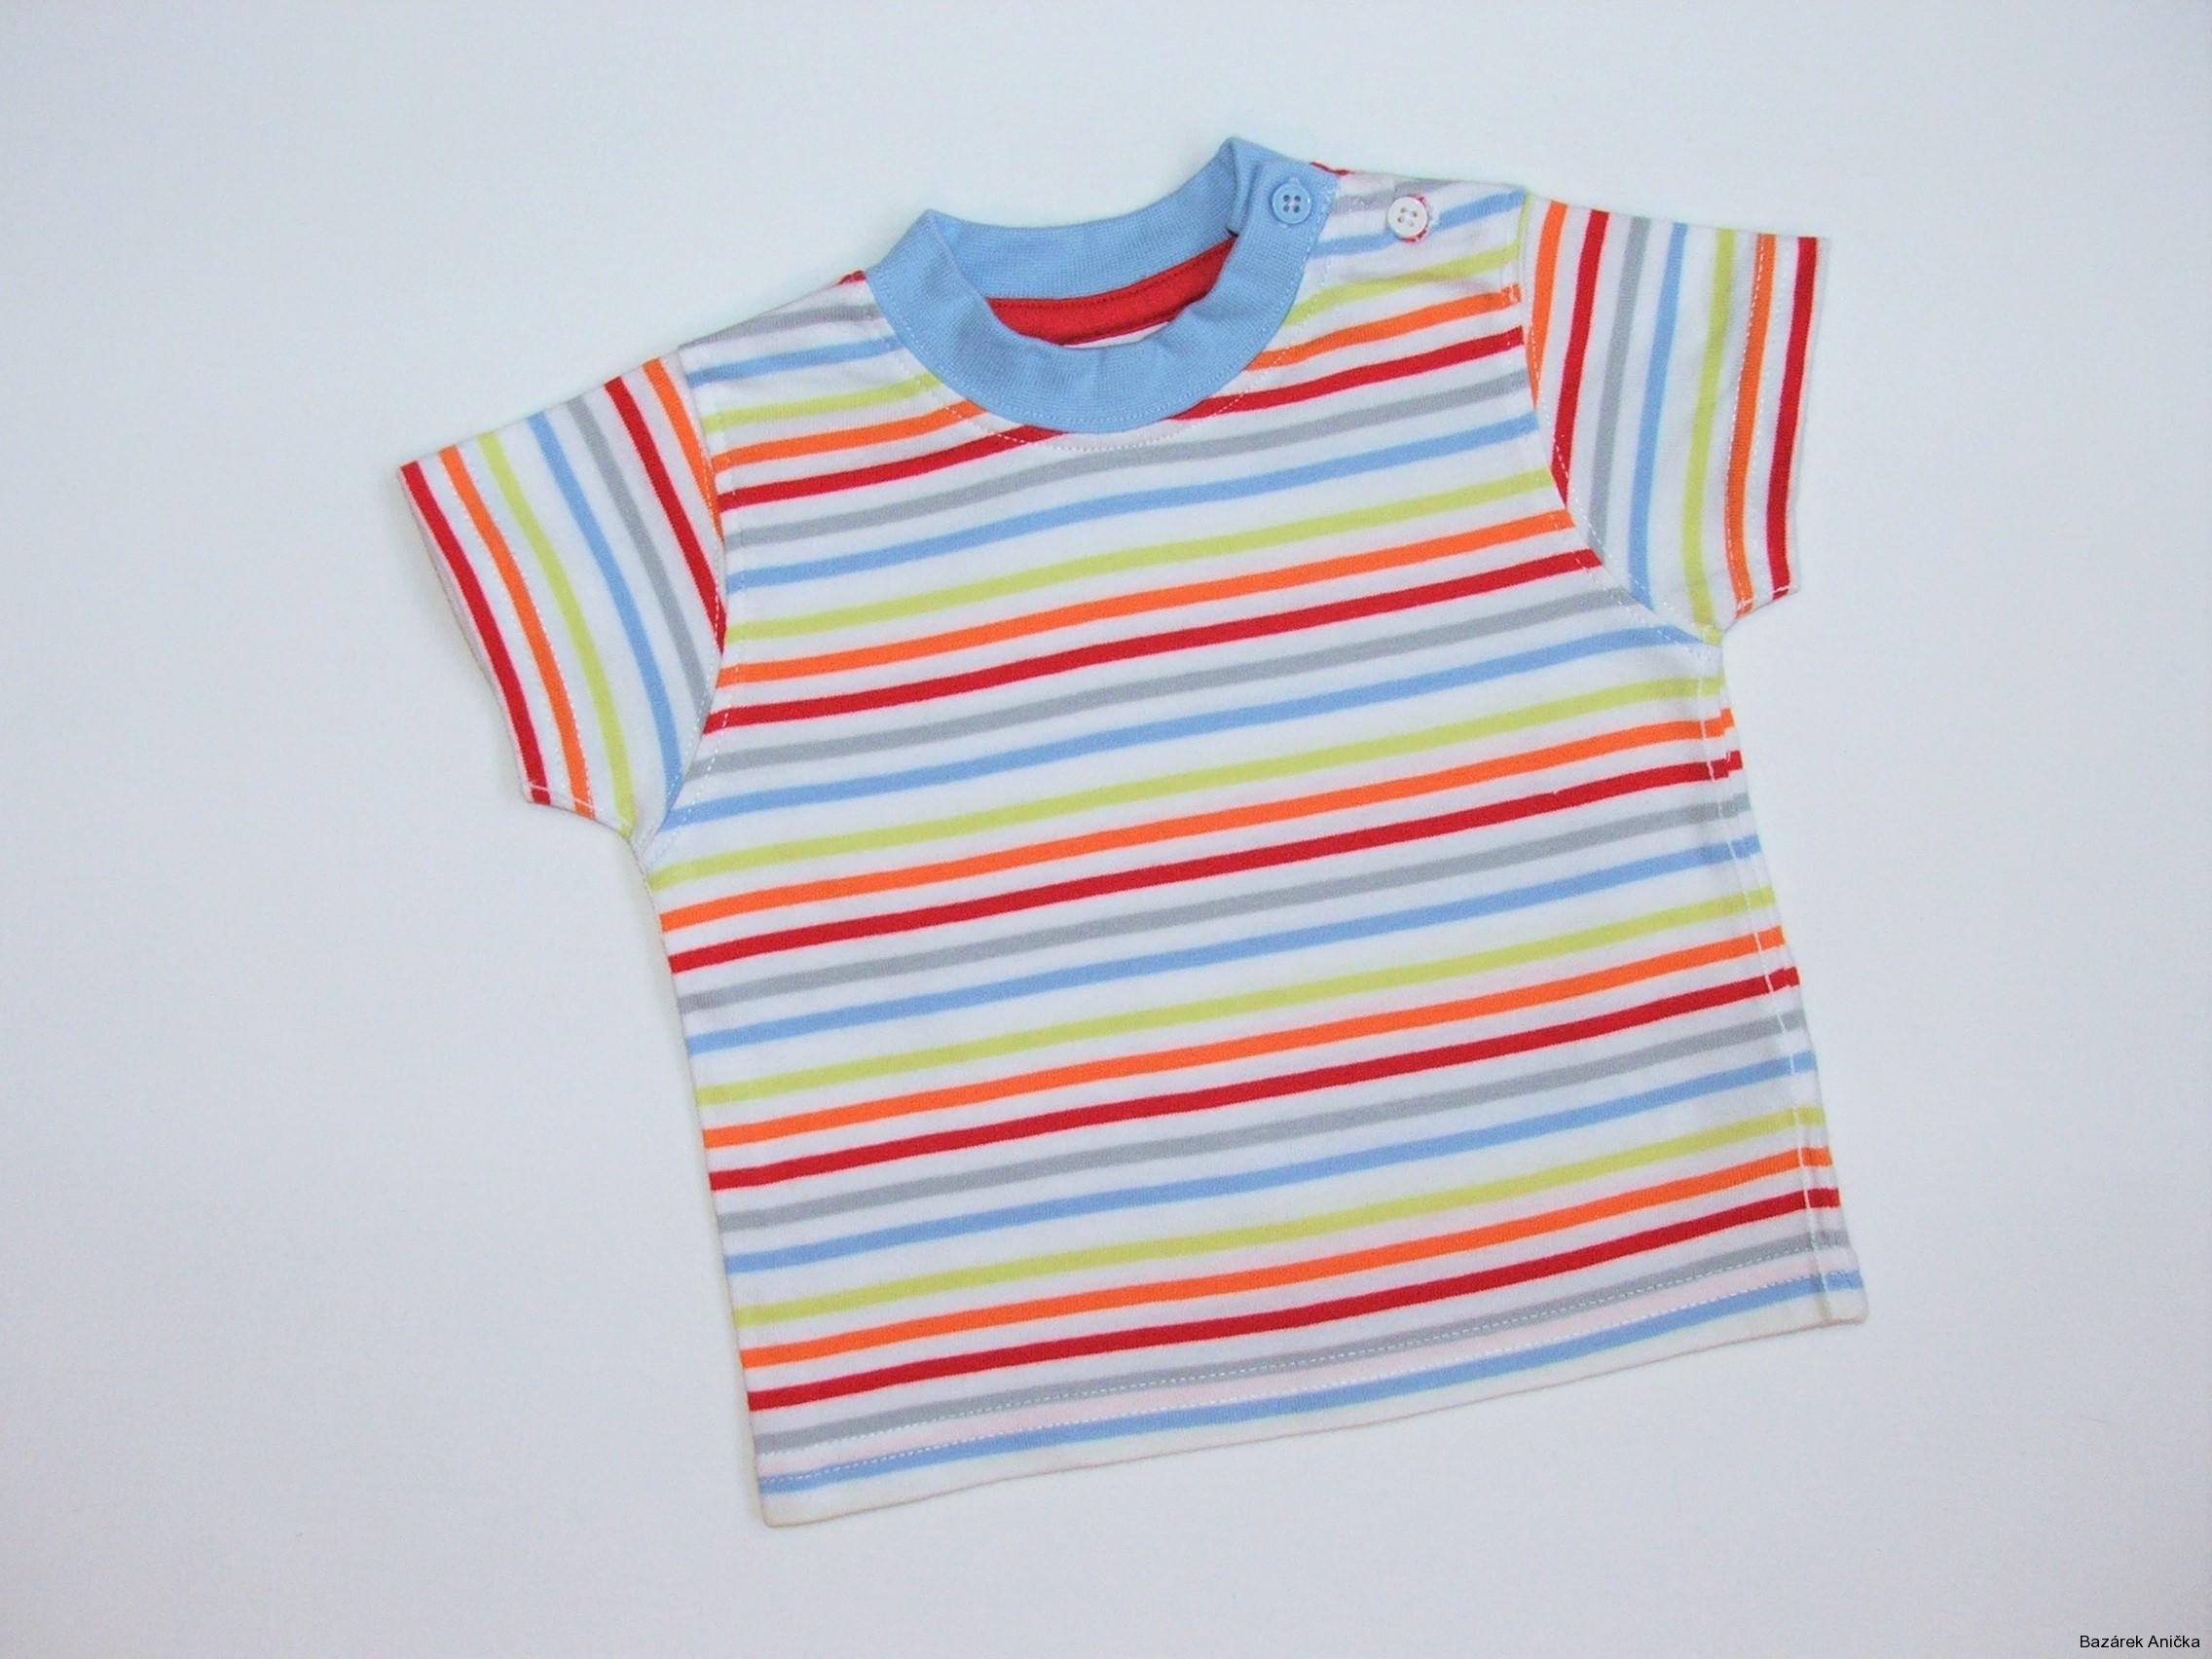 Pruhované chlapecké triko vel. 62, Miniclub